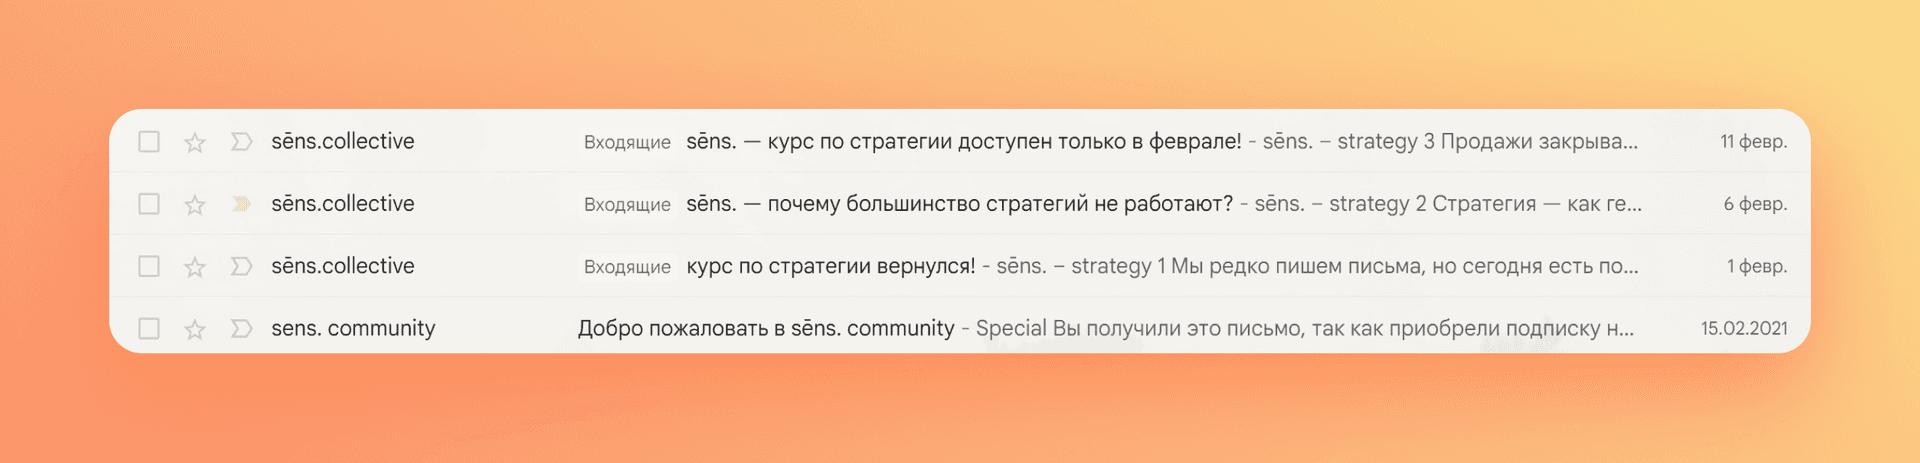 Яндекс 360_виды рассылок_8